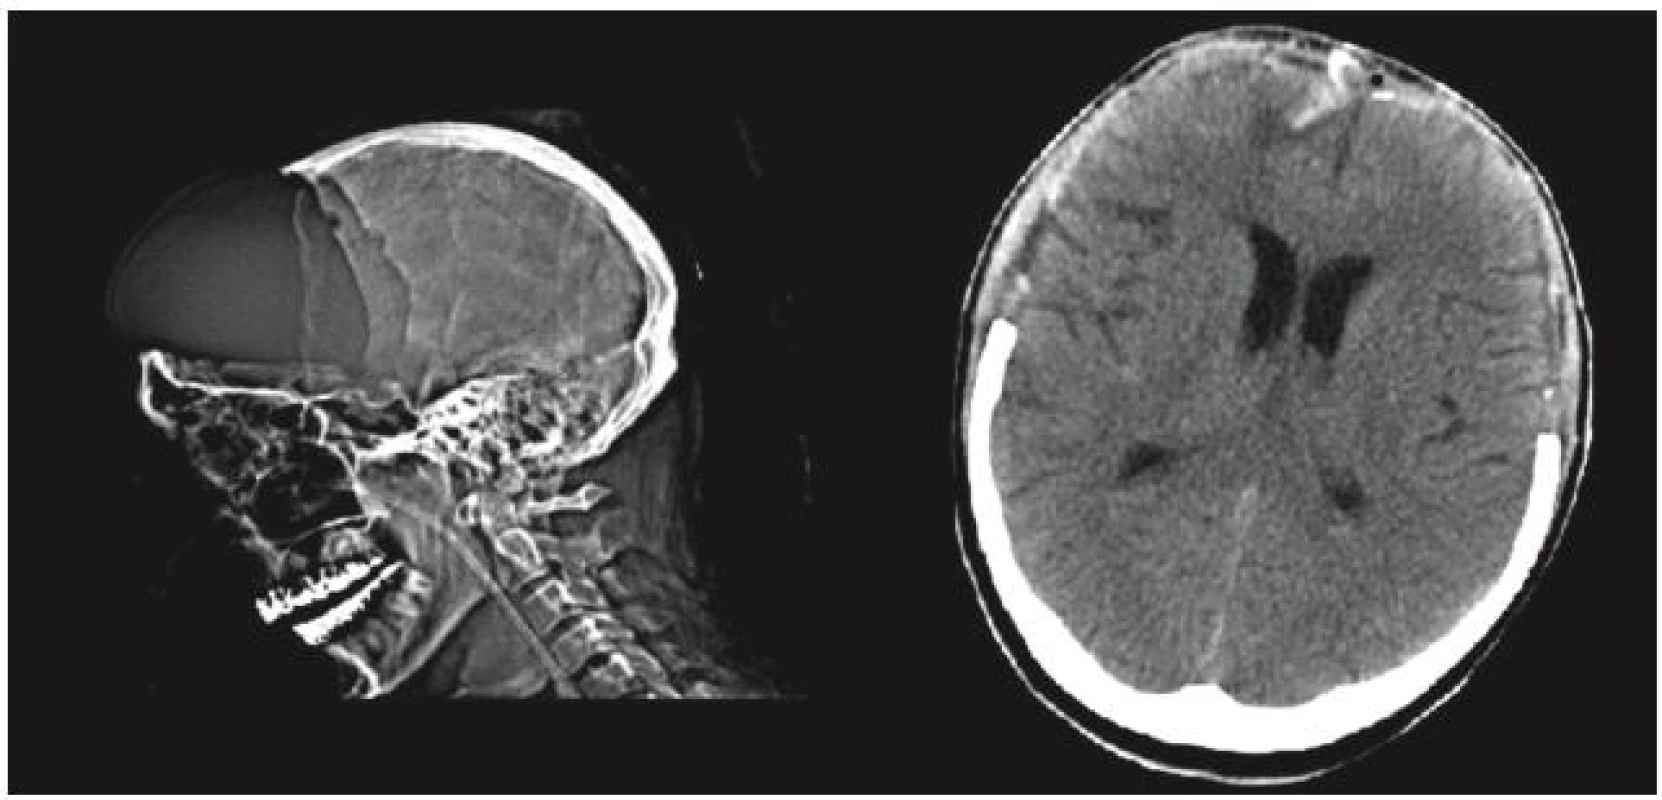 Rozsah bifrontální kraniektomie na bočním snímku lebky a CT. Je zde patrná expandující mozková tkáň prominující až 3 cm nad původní polohu v nitrolebí.